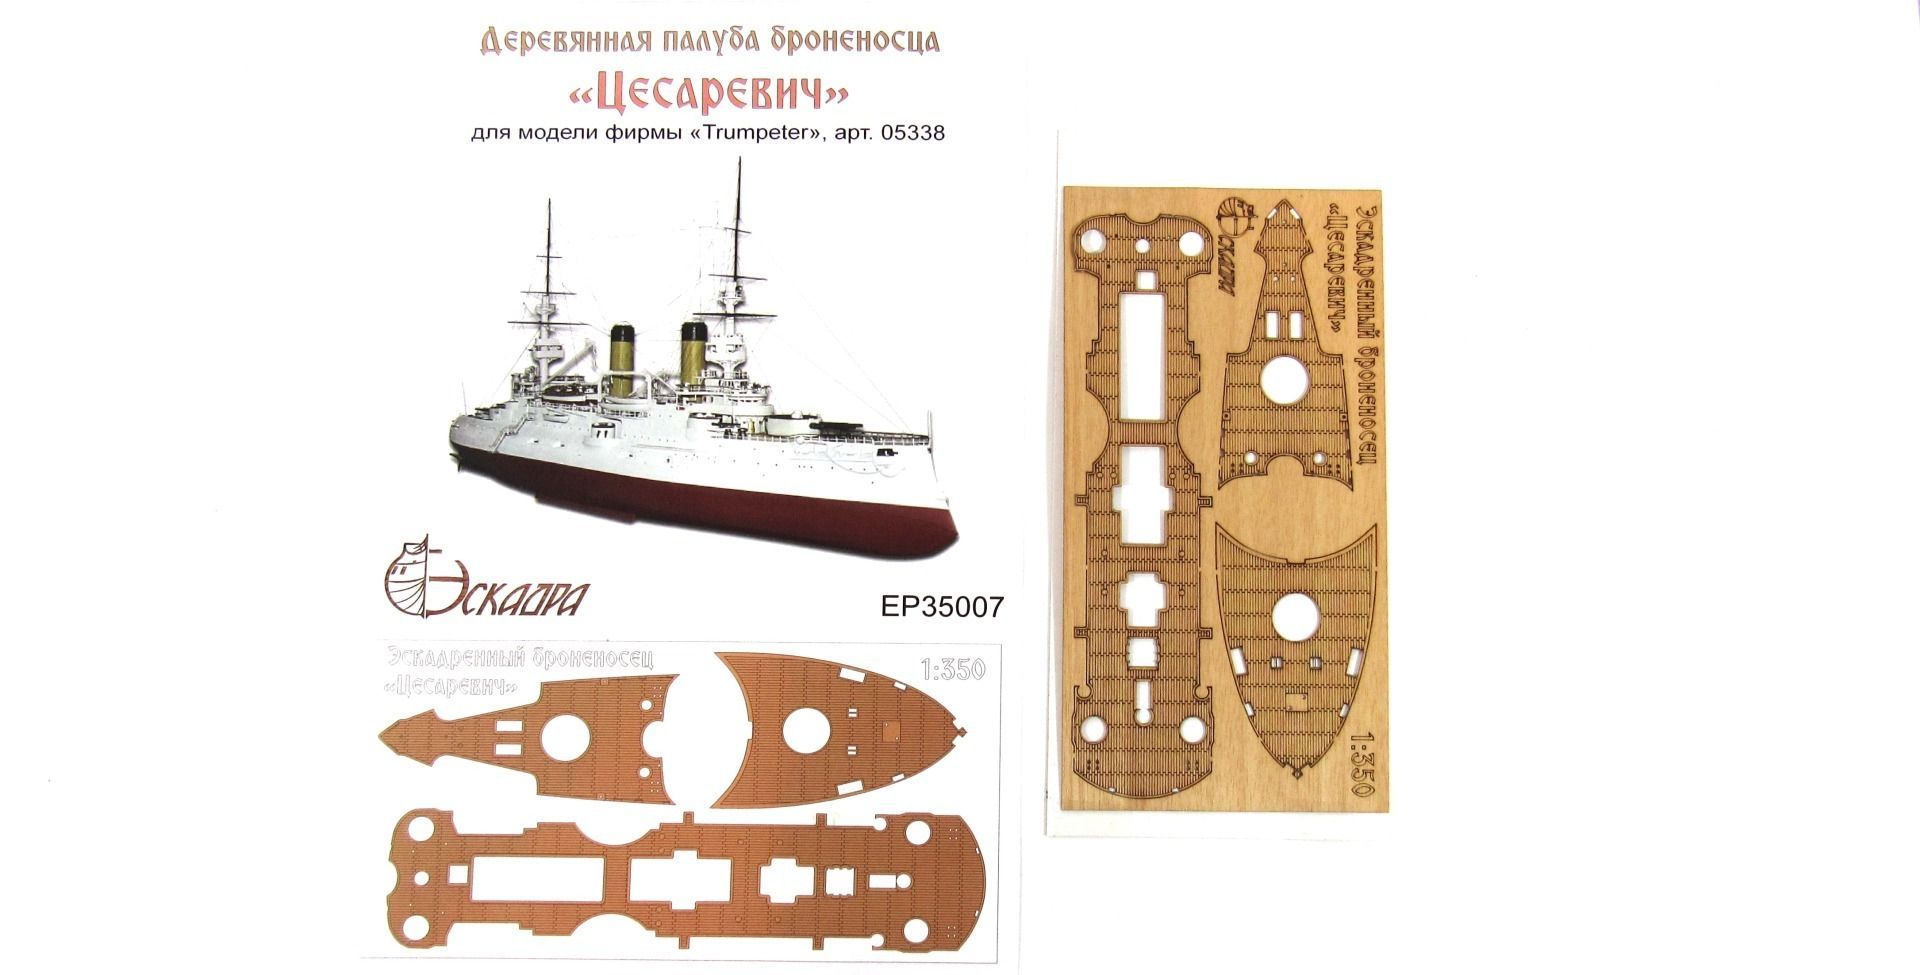 The deck of the battleship "Tsesarevich" - imodeller.store